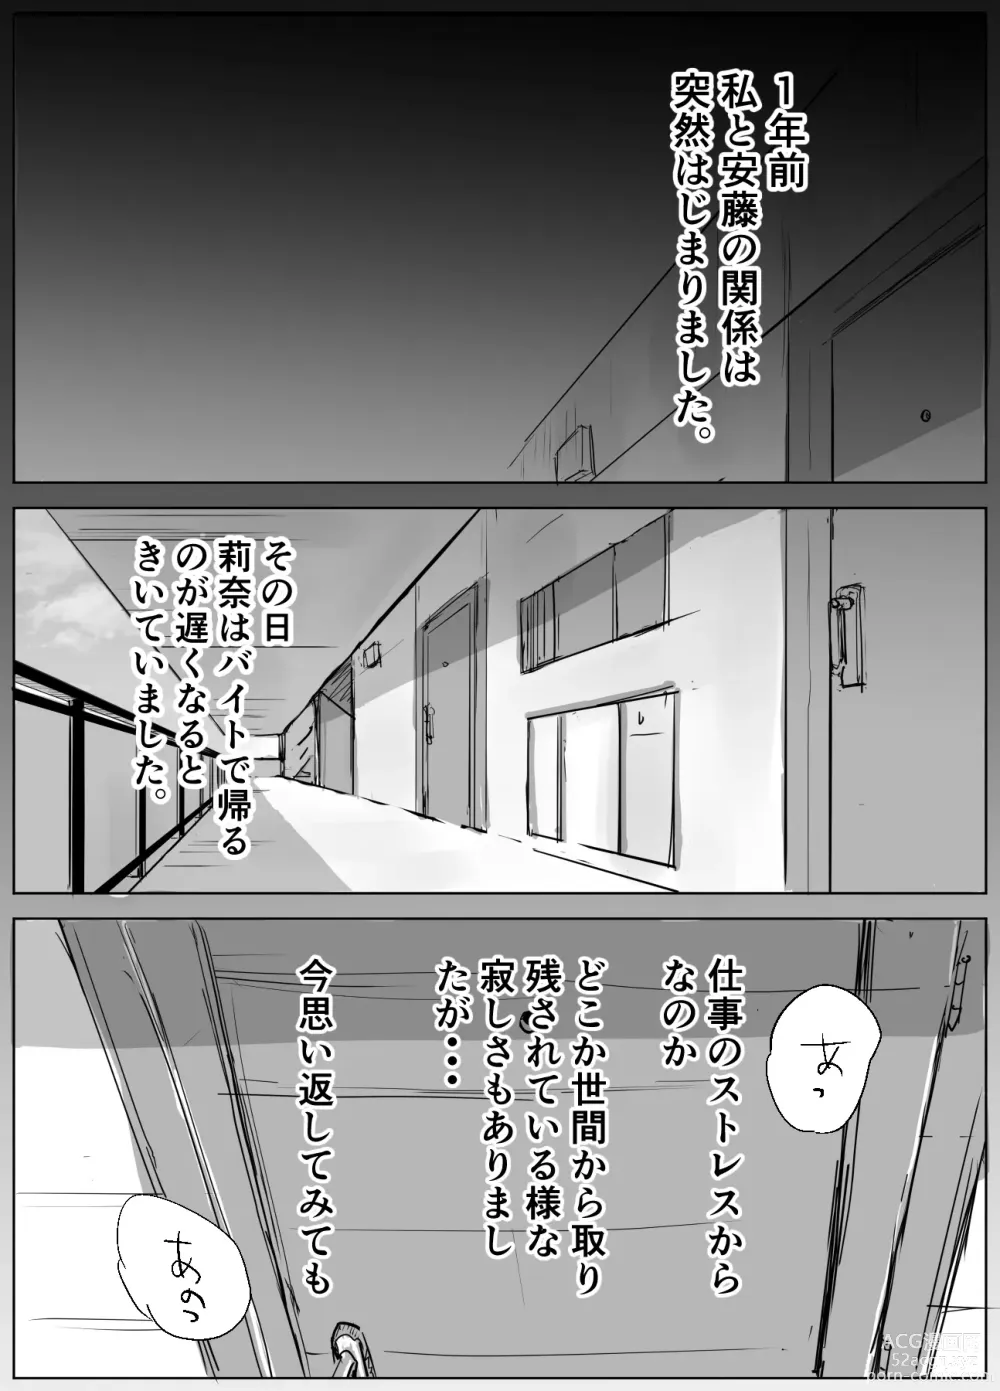 Page 4 of doujinshi Ano Hi no Uso 4 Rina Mama ~Hitomi~ 1-nen Mae no Dekigoto